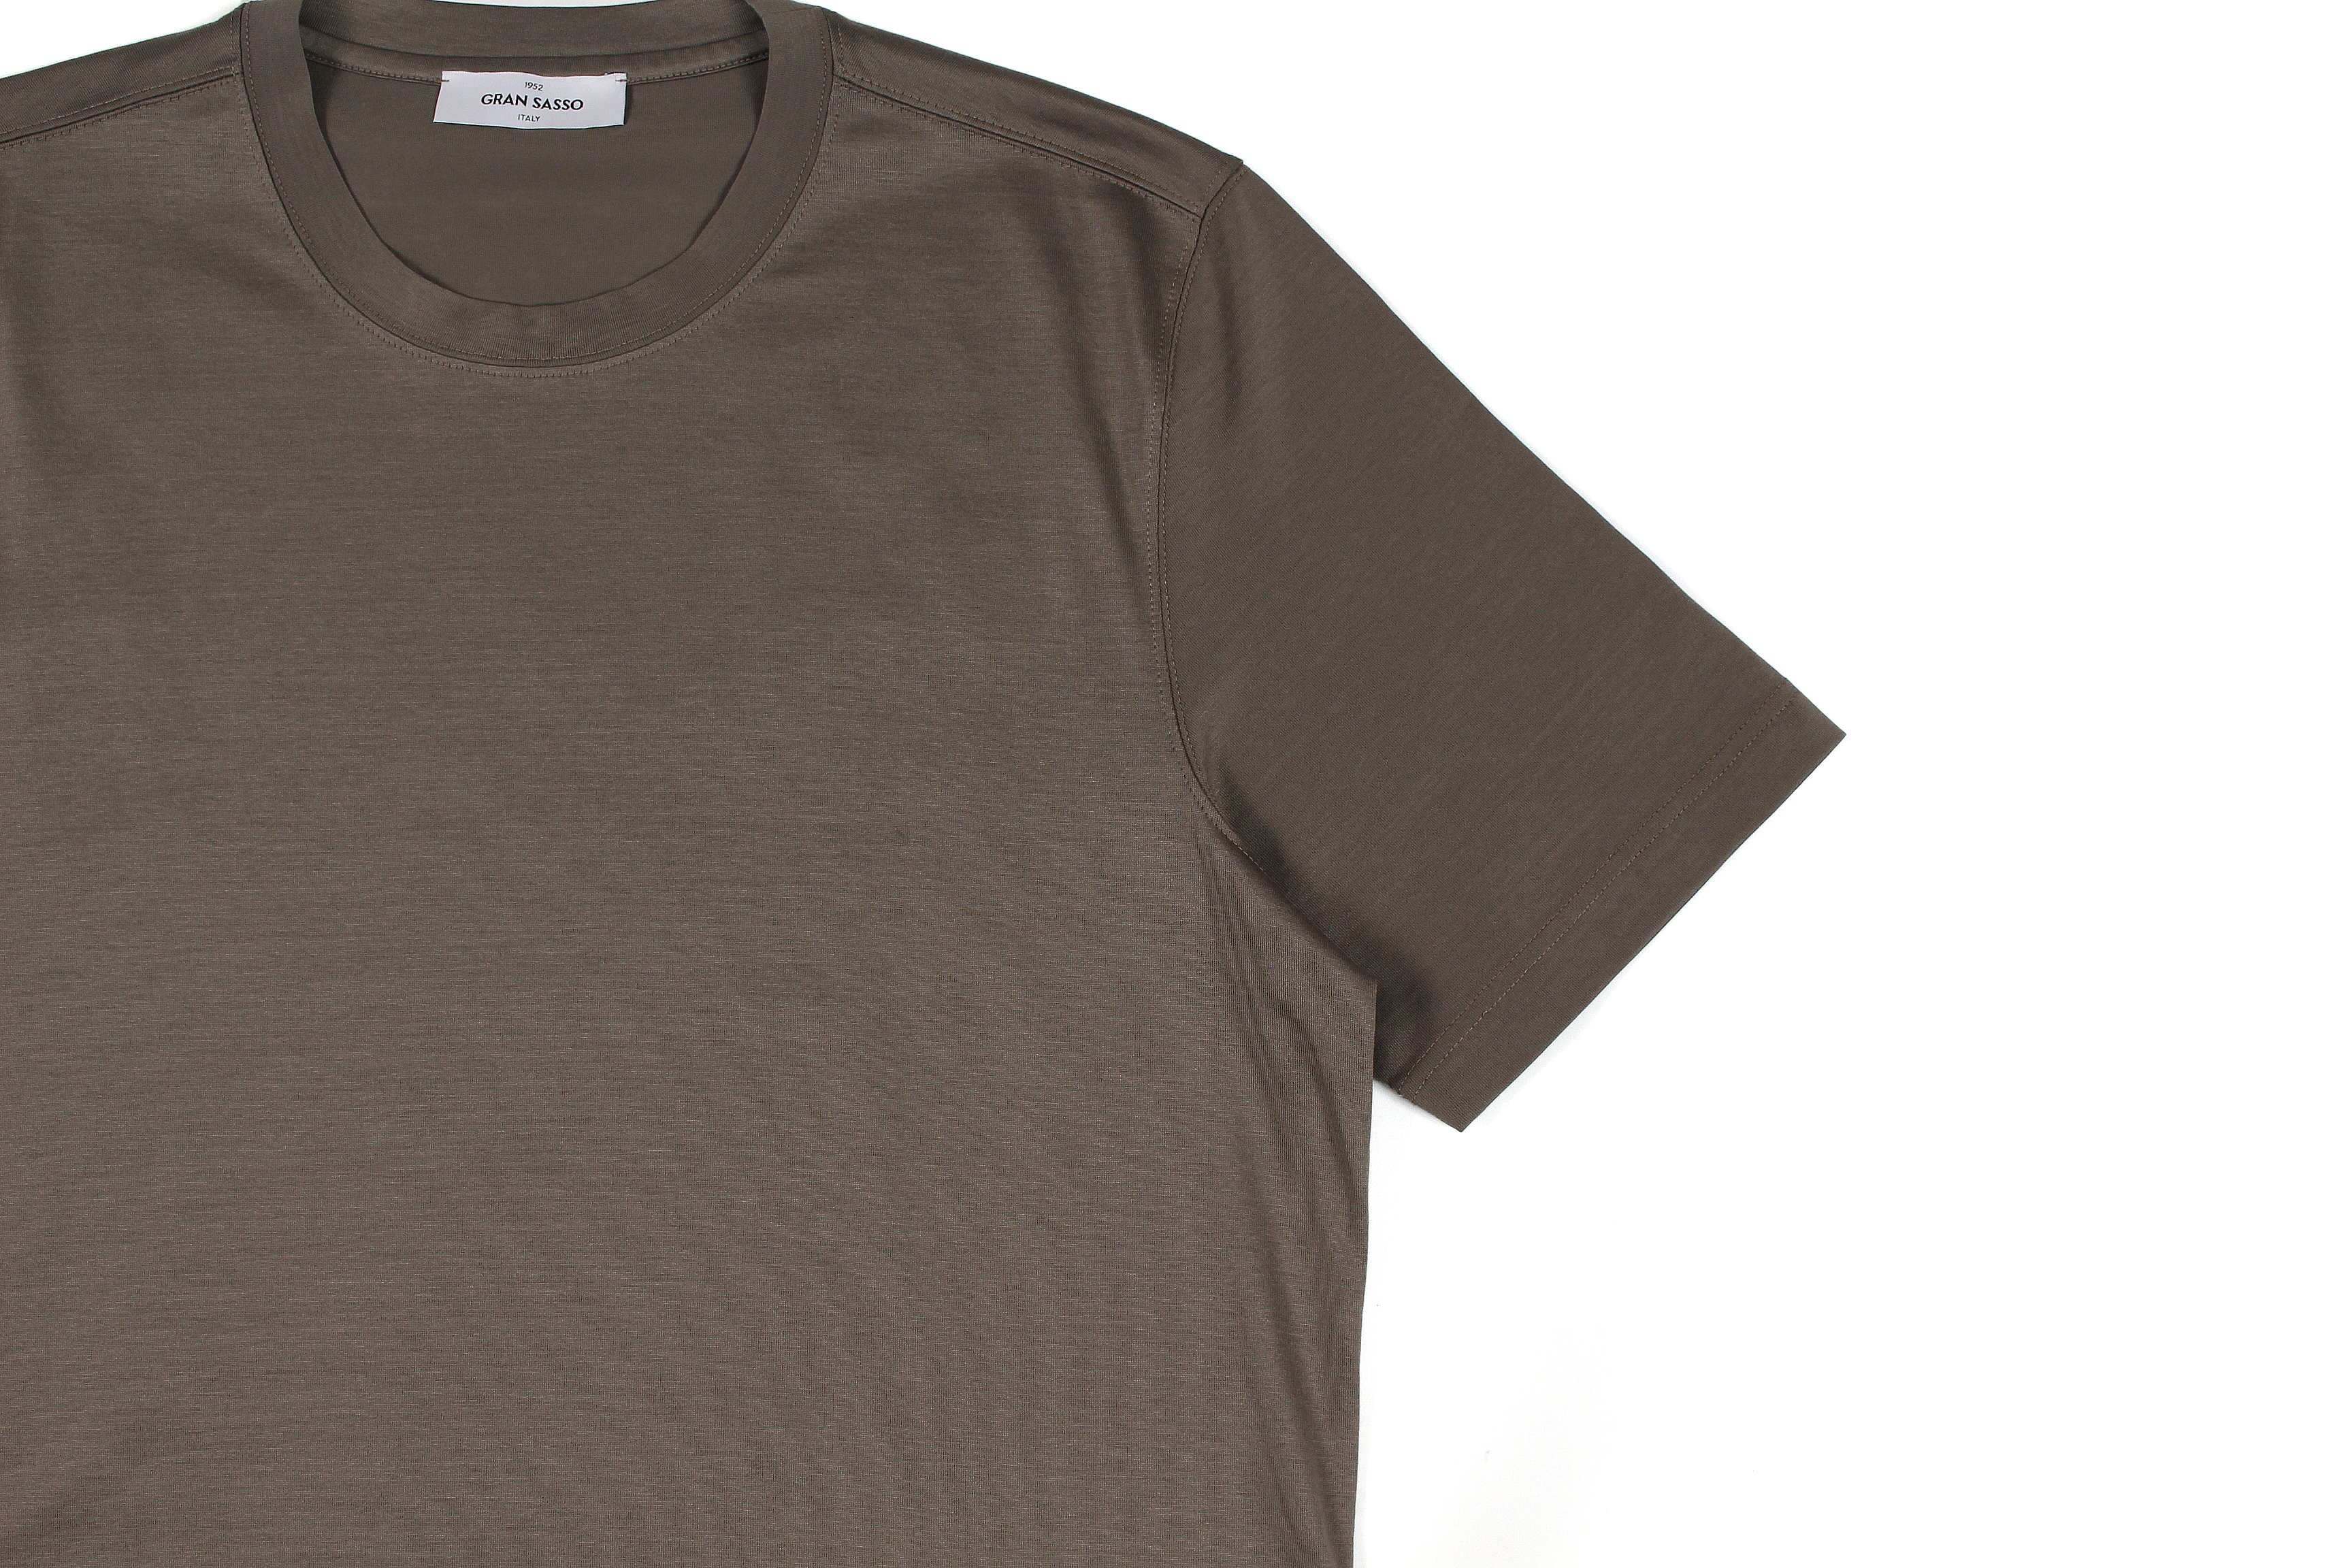 Gran Sasso (グランサッソ) Crew Neck T-shirt (クルーネック Tシャツ) Mercerised Cotton マーセライズドコットン Tシャツ TAUPE (トープ・171) made in italy (イタリア製) 2022春夏新作 【入荷しました】【フリー分発売開始】愛知 名古屋 Alto e Diritto altoediritto アルトエデリット